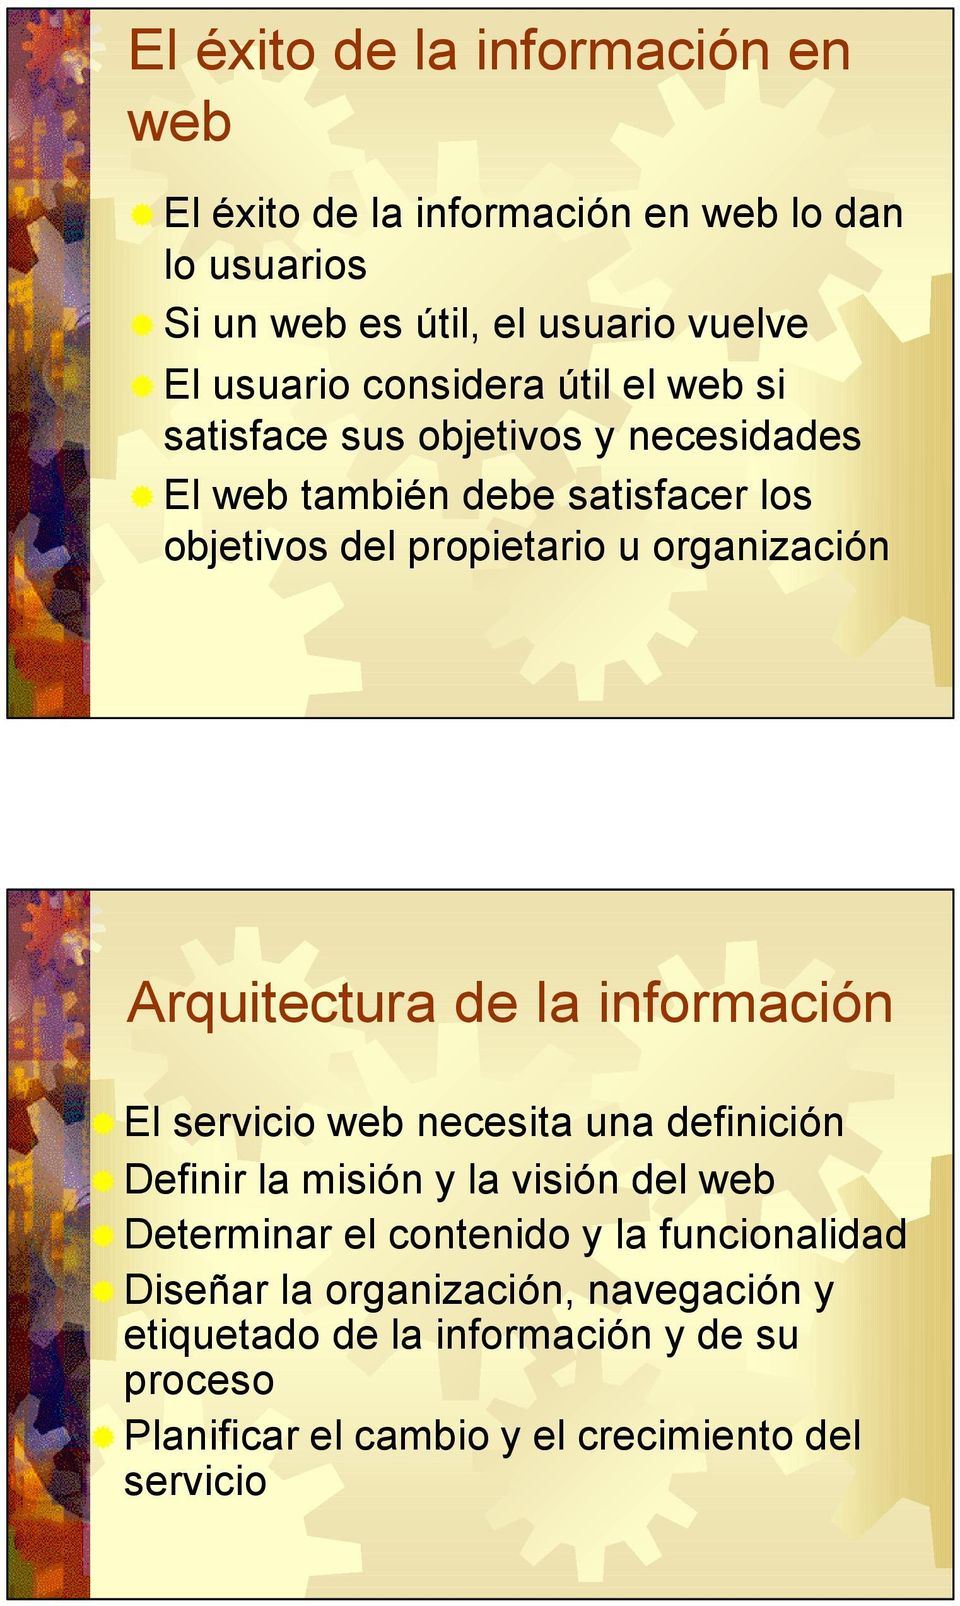 Arquitectura de la información El servicio web necesita una definición Definir la misión y la visión del web Determinar el contenido y la